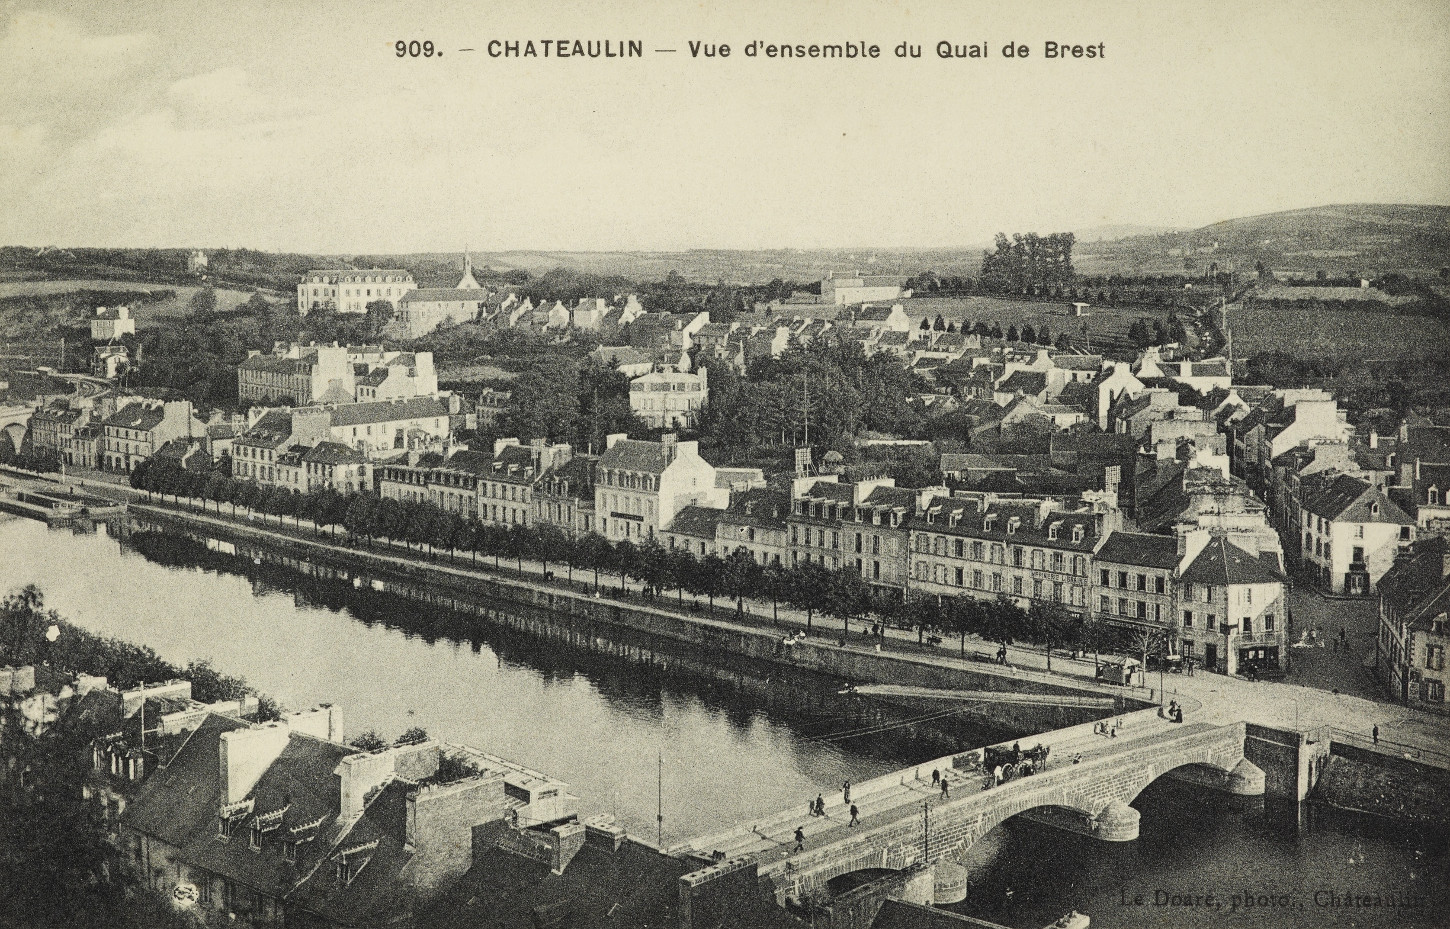 Vue générale de Châteaulin. Carte postale. Musée de Bretagne : 973.0033.192.